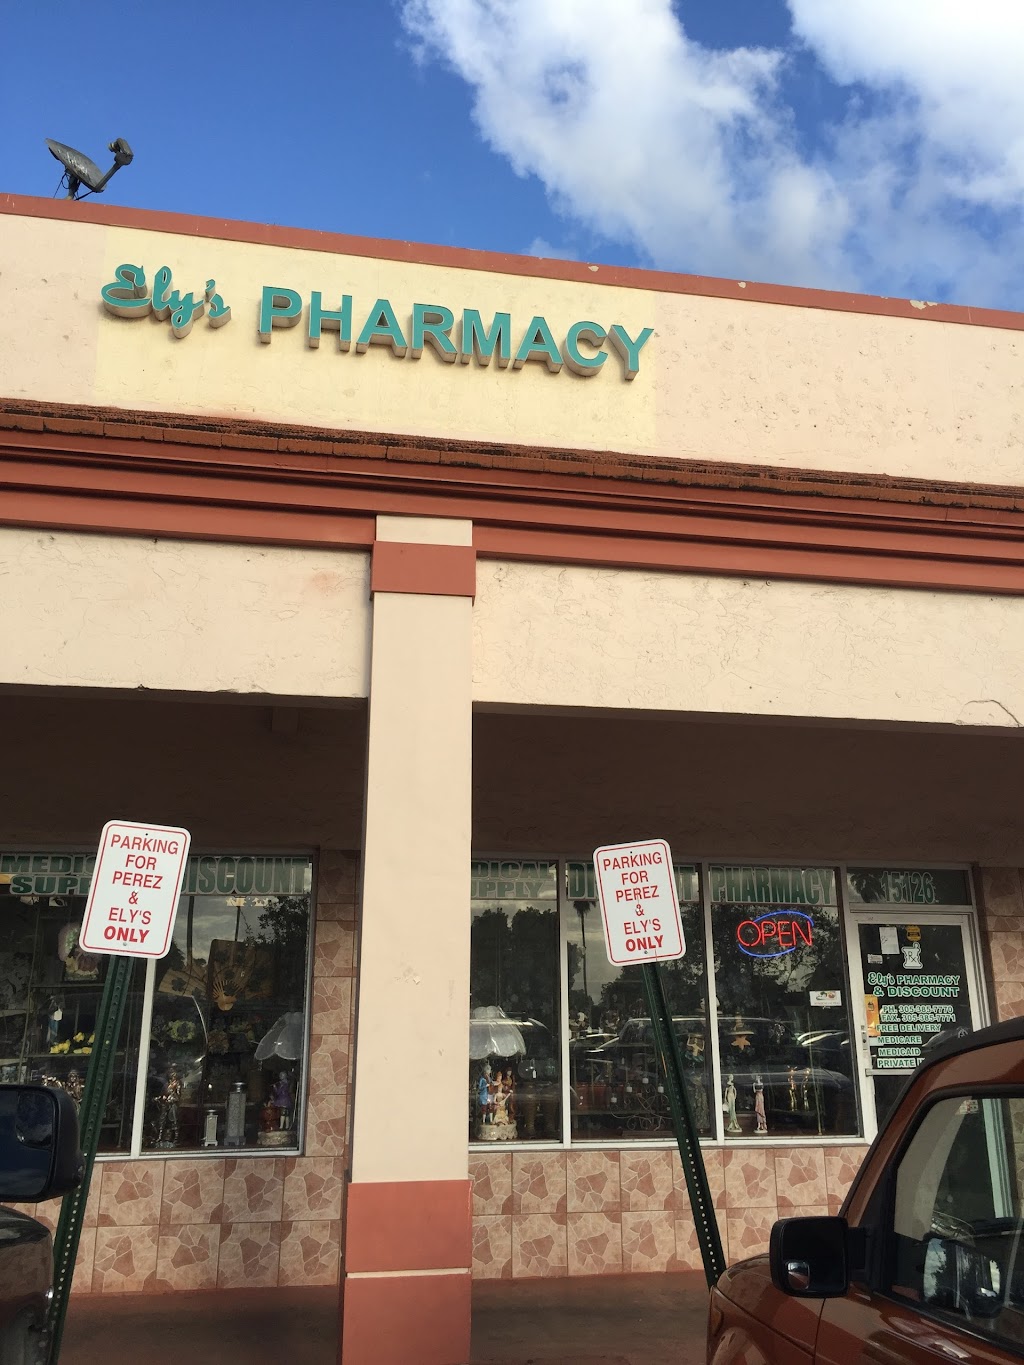 Elys Pharmacy & Discount | 15126 SW 56th St, Miami, FL 33185, USA | Phone: (305) 385-7770